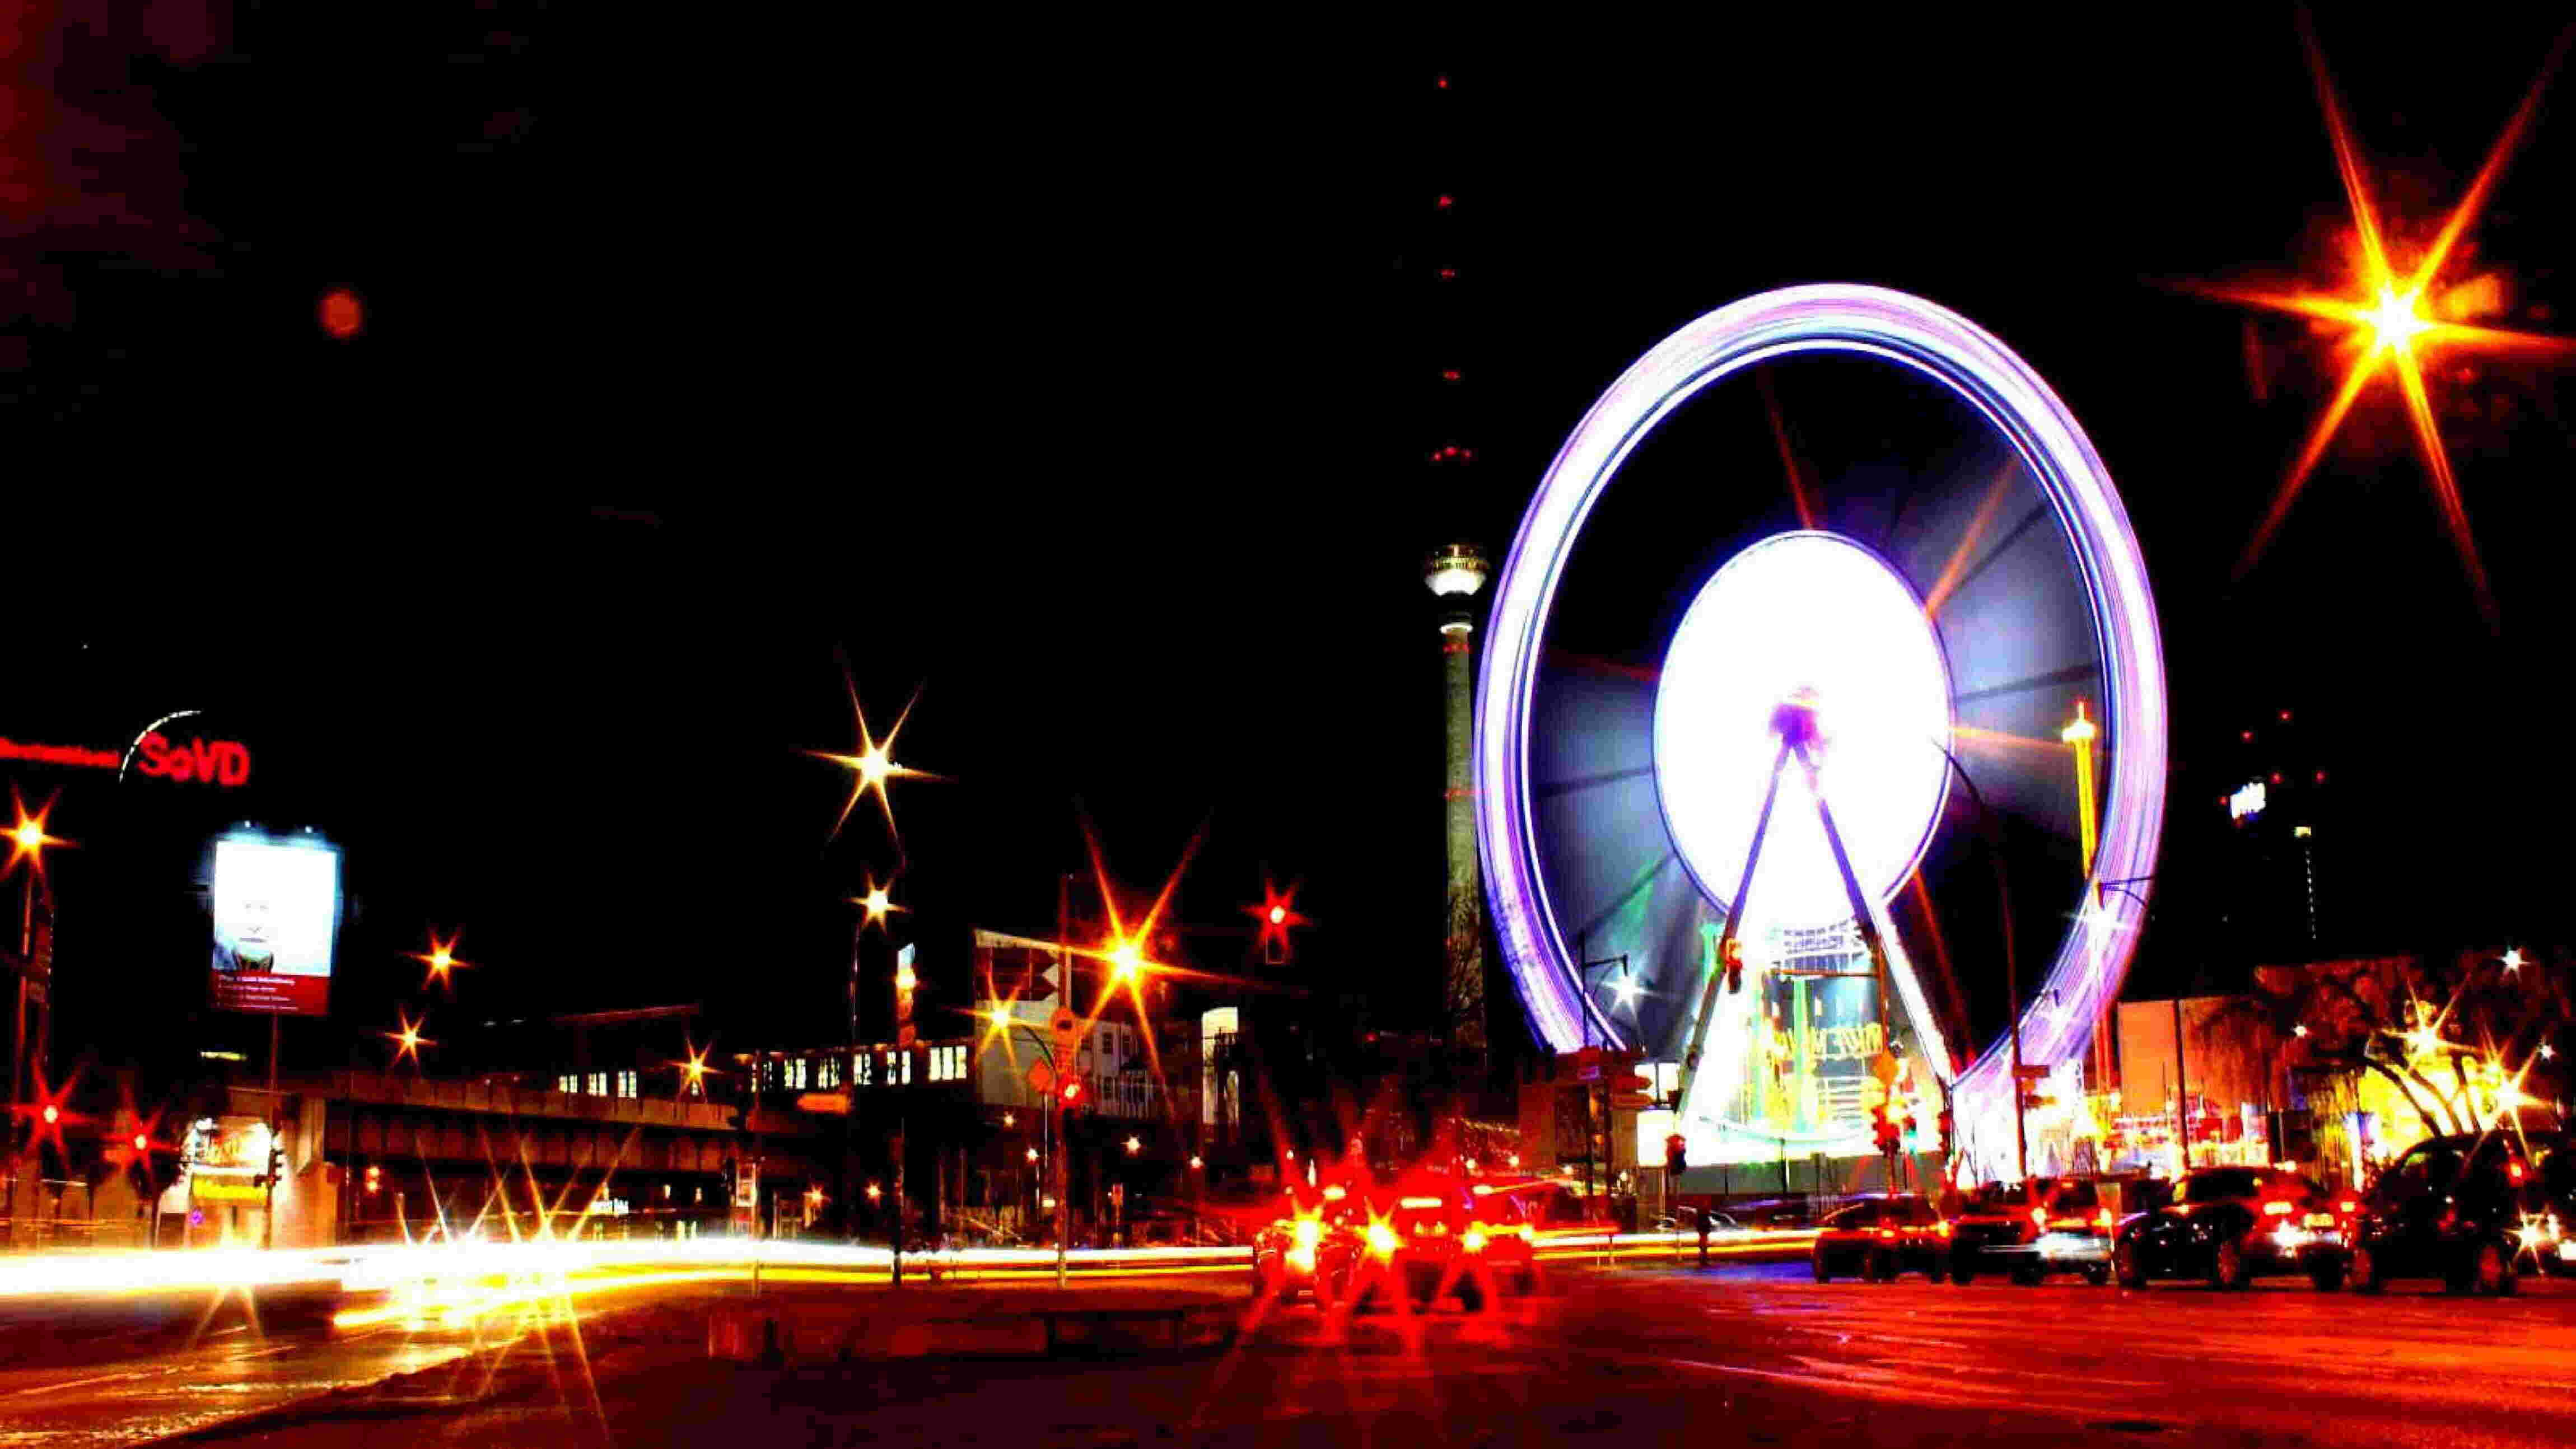 Berlin Ferris wheel